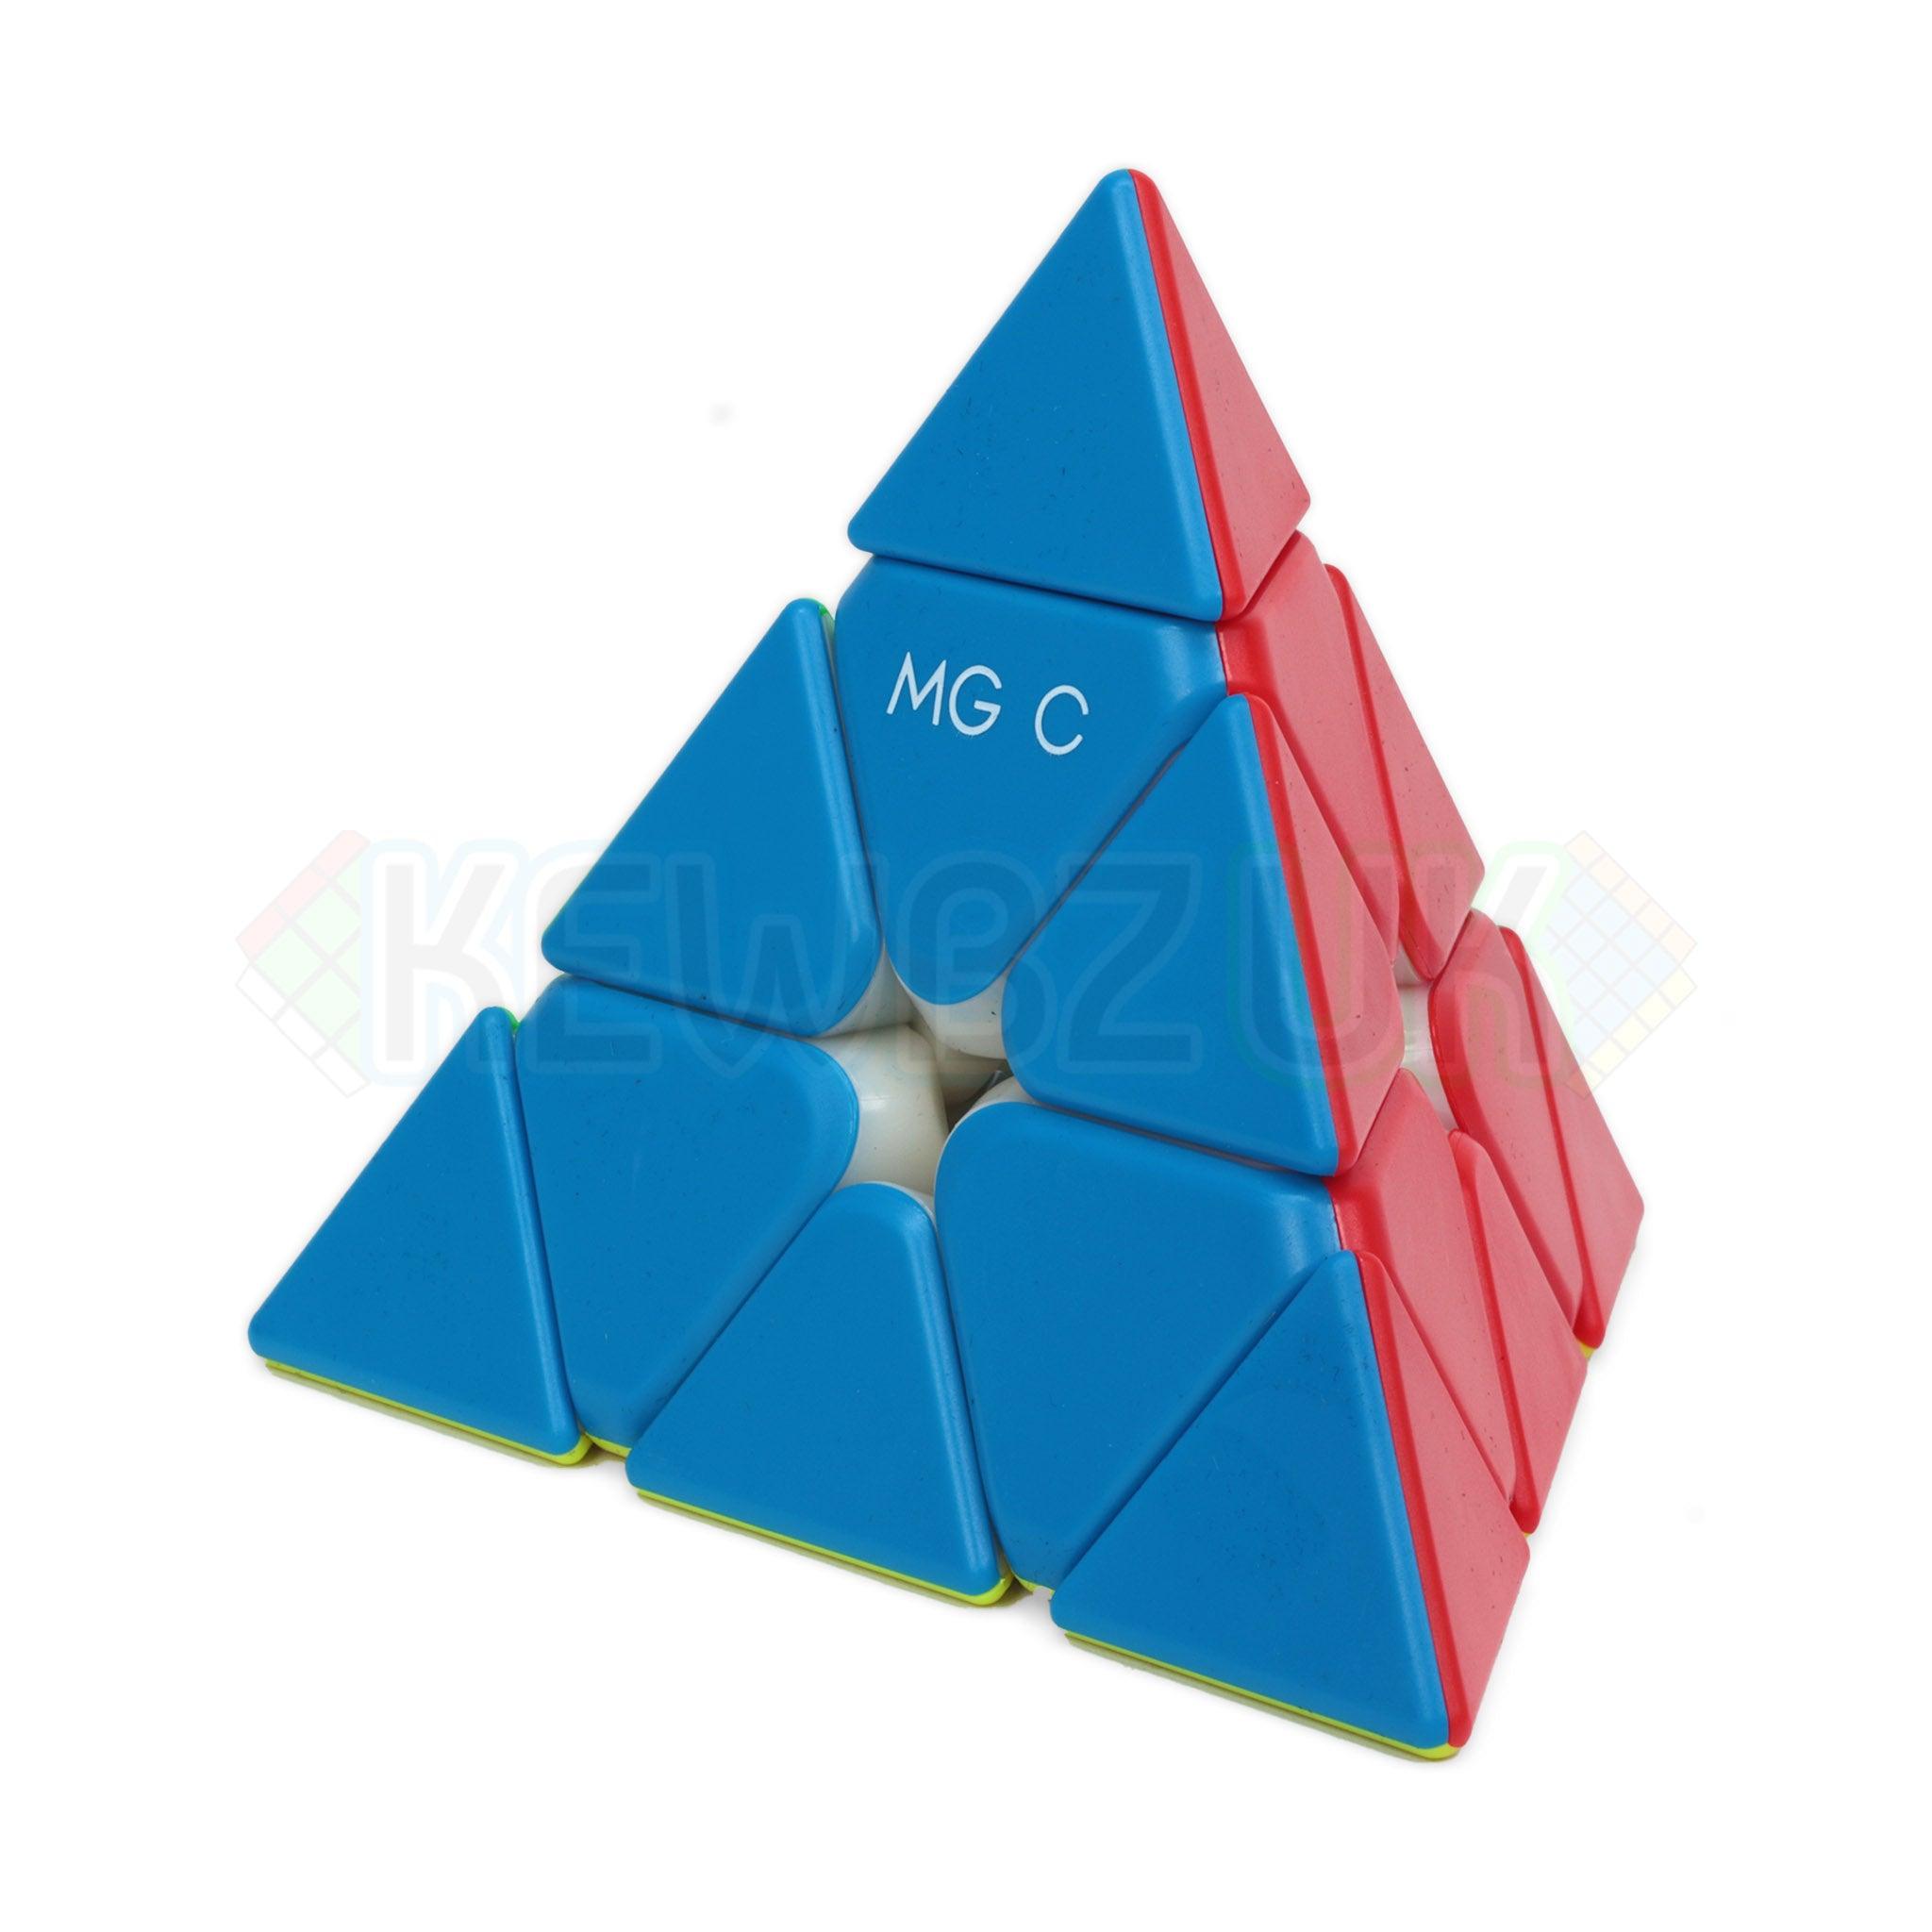 YJ MGC Pyraminx Magnetic